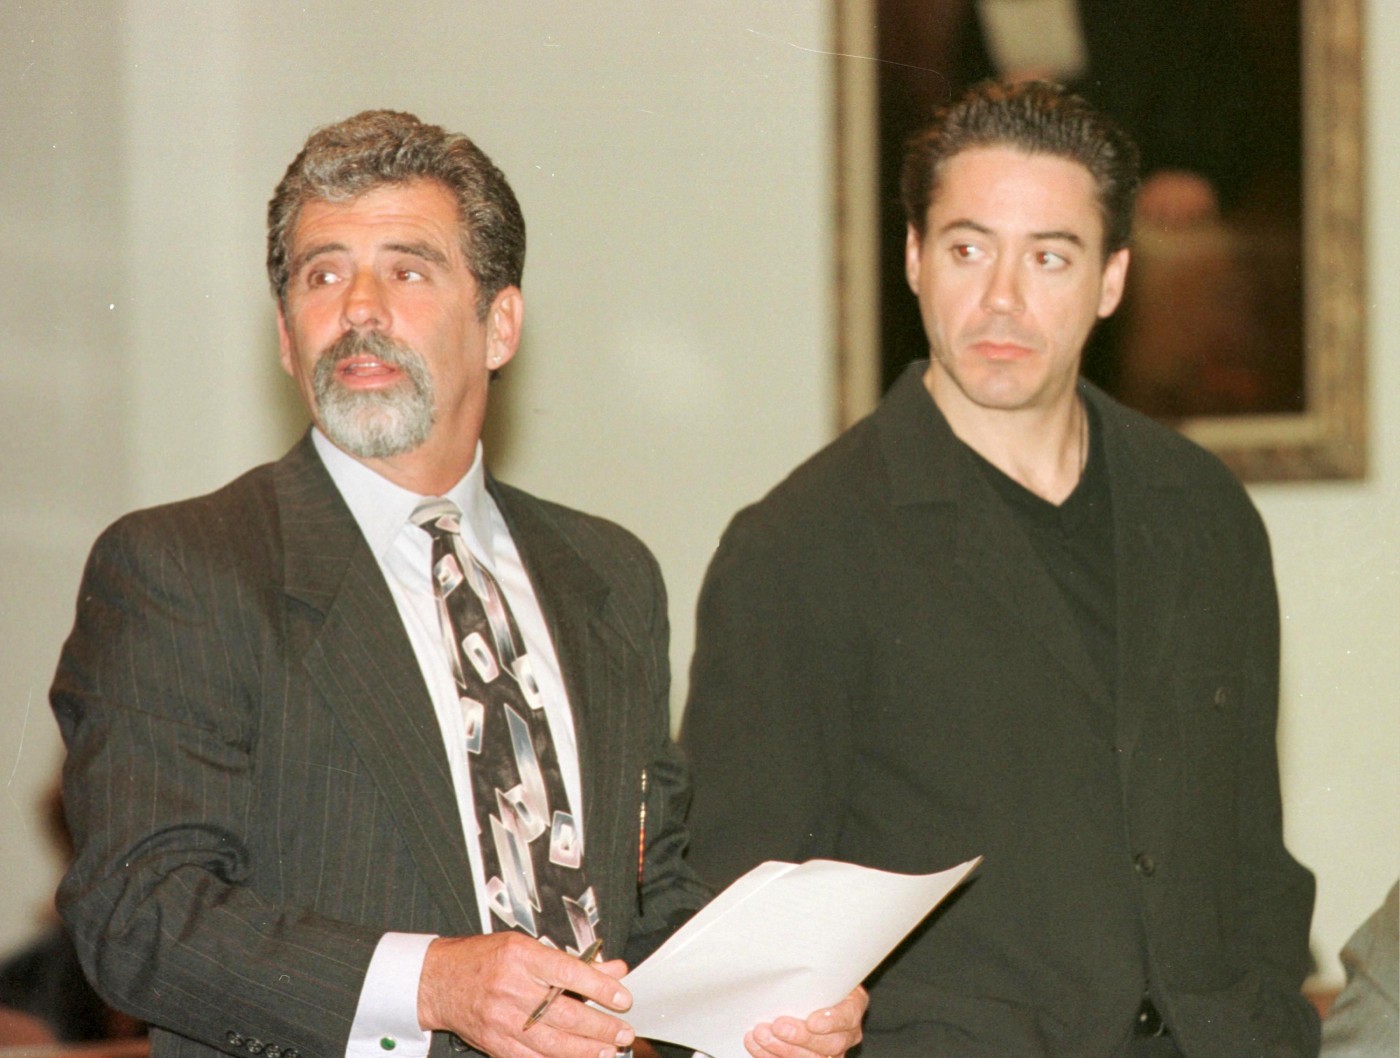 Robert Downey Jr. in court